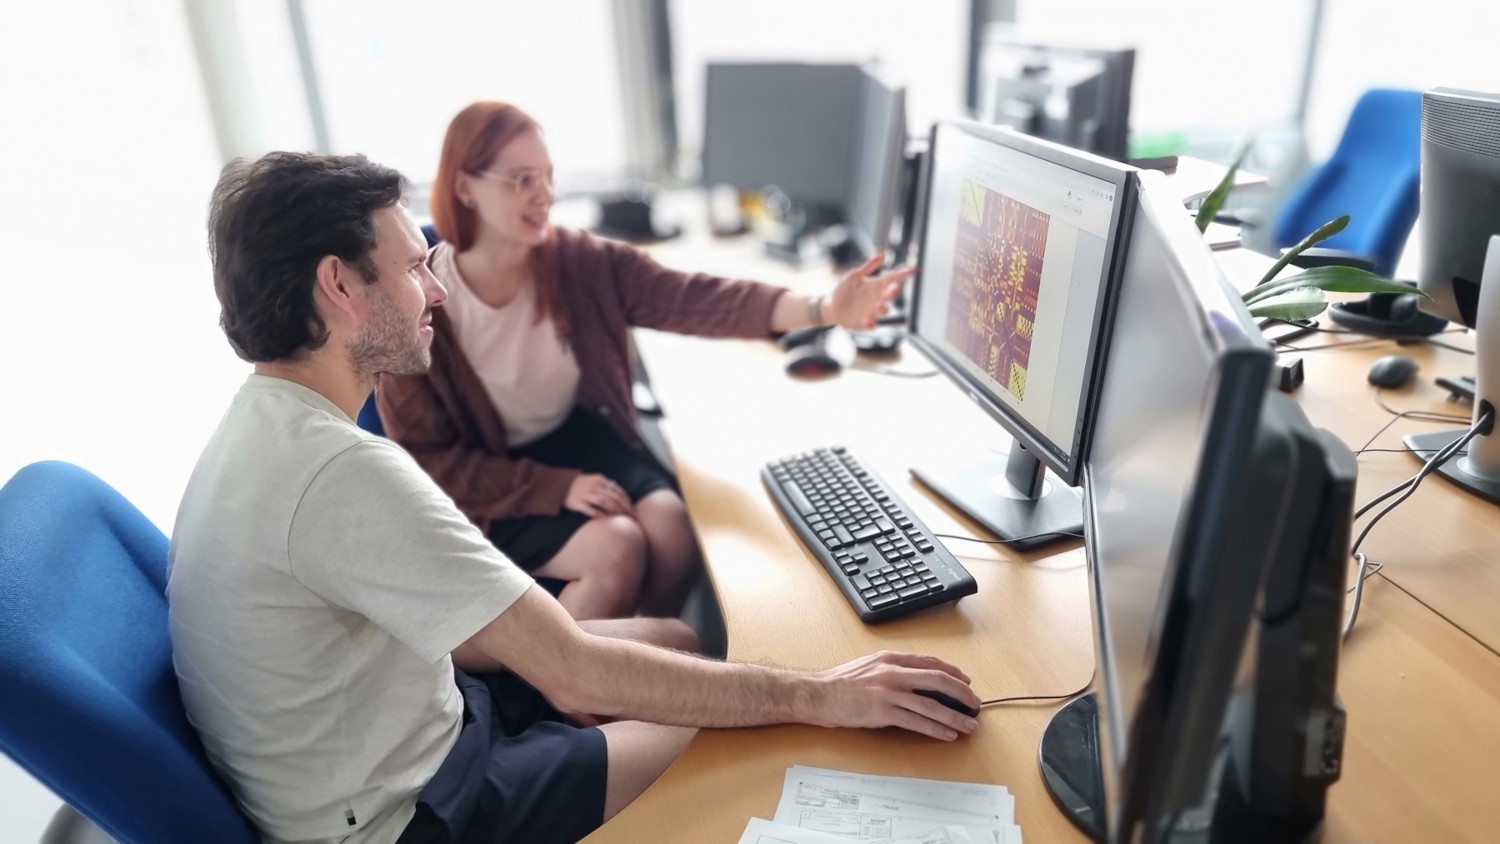 Eine Frau und ein Mann sitzen nebeneinander vor zwei Computerbildschirmen, die Frau zeigt auf einen der Bildschirme